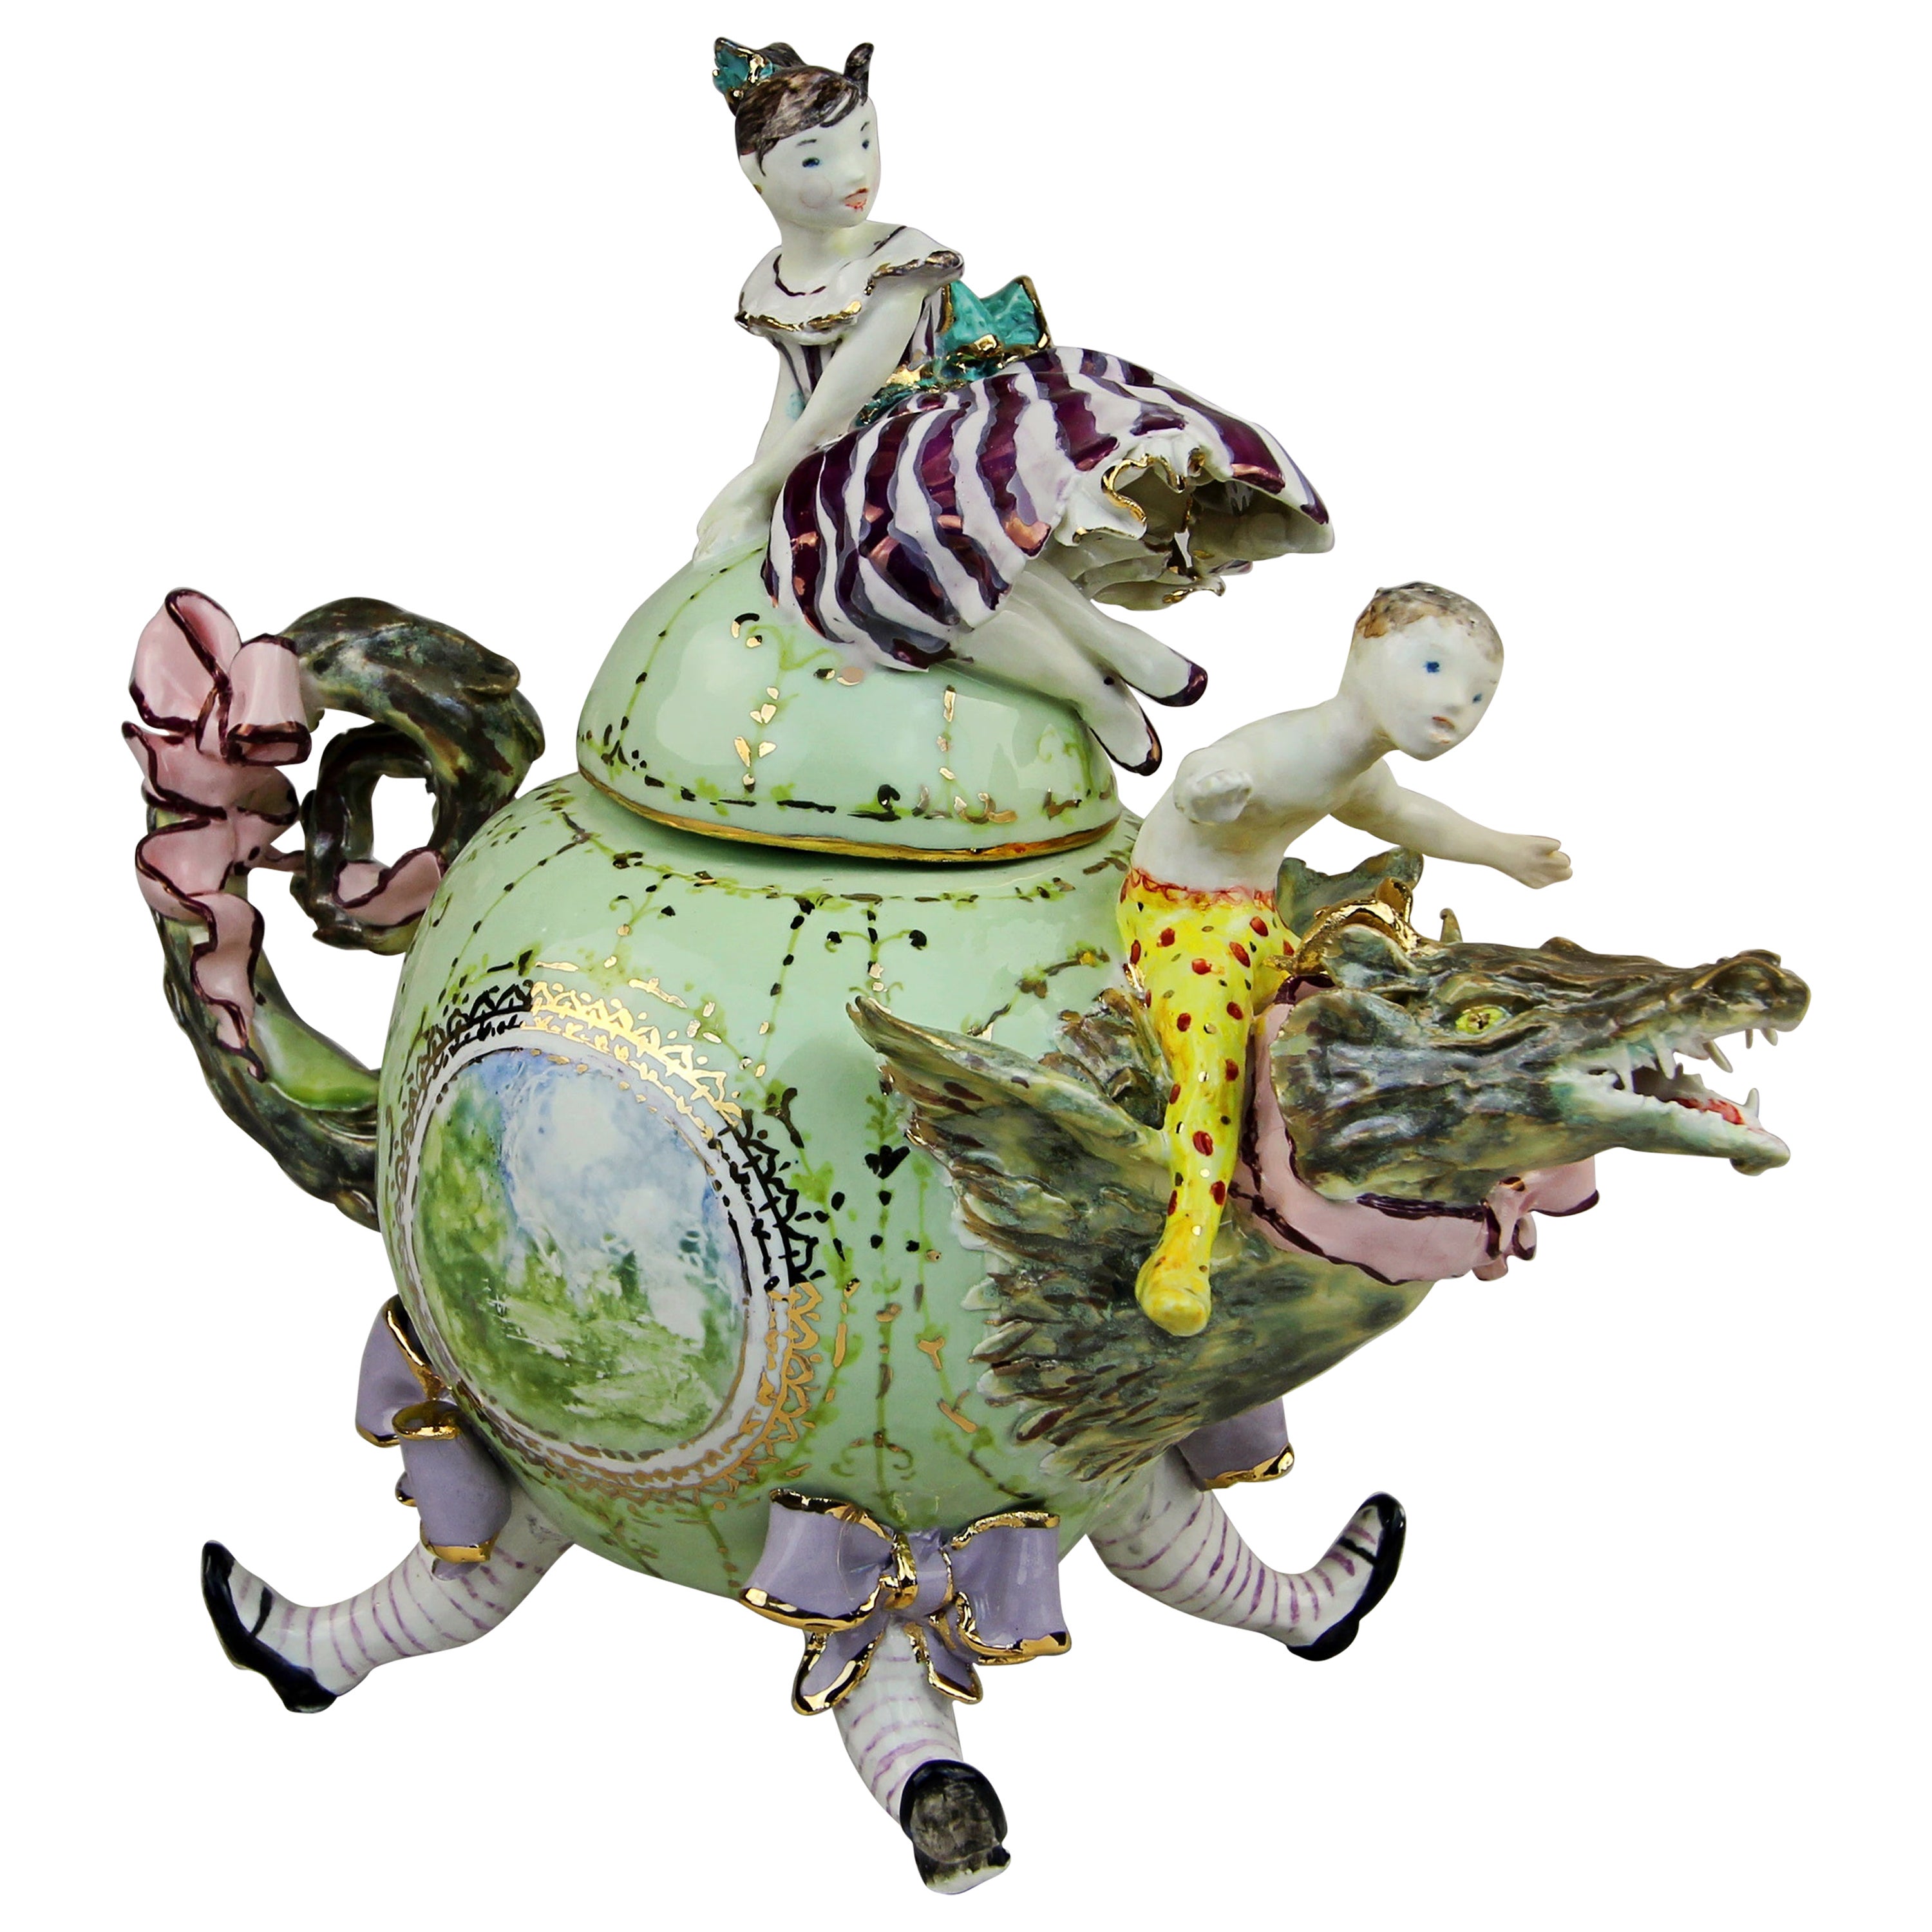 Porcelaine dragon en porcelaine, fabriqué à la main en Italie, design artisanal 2021